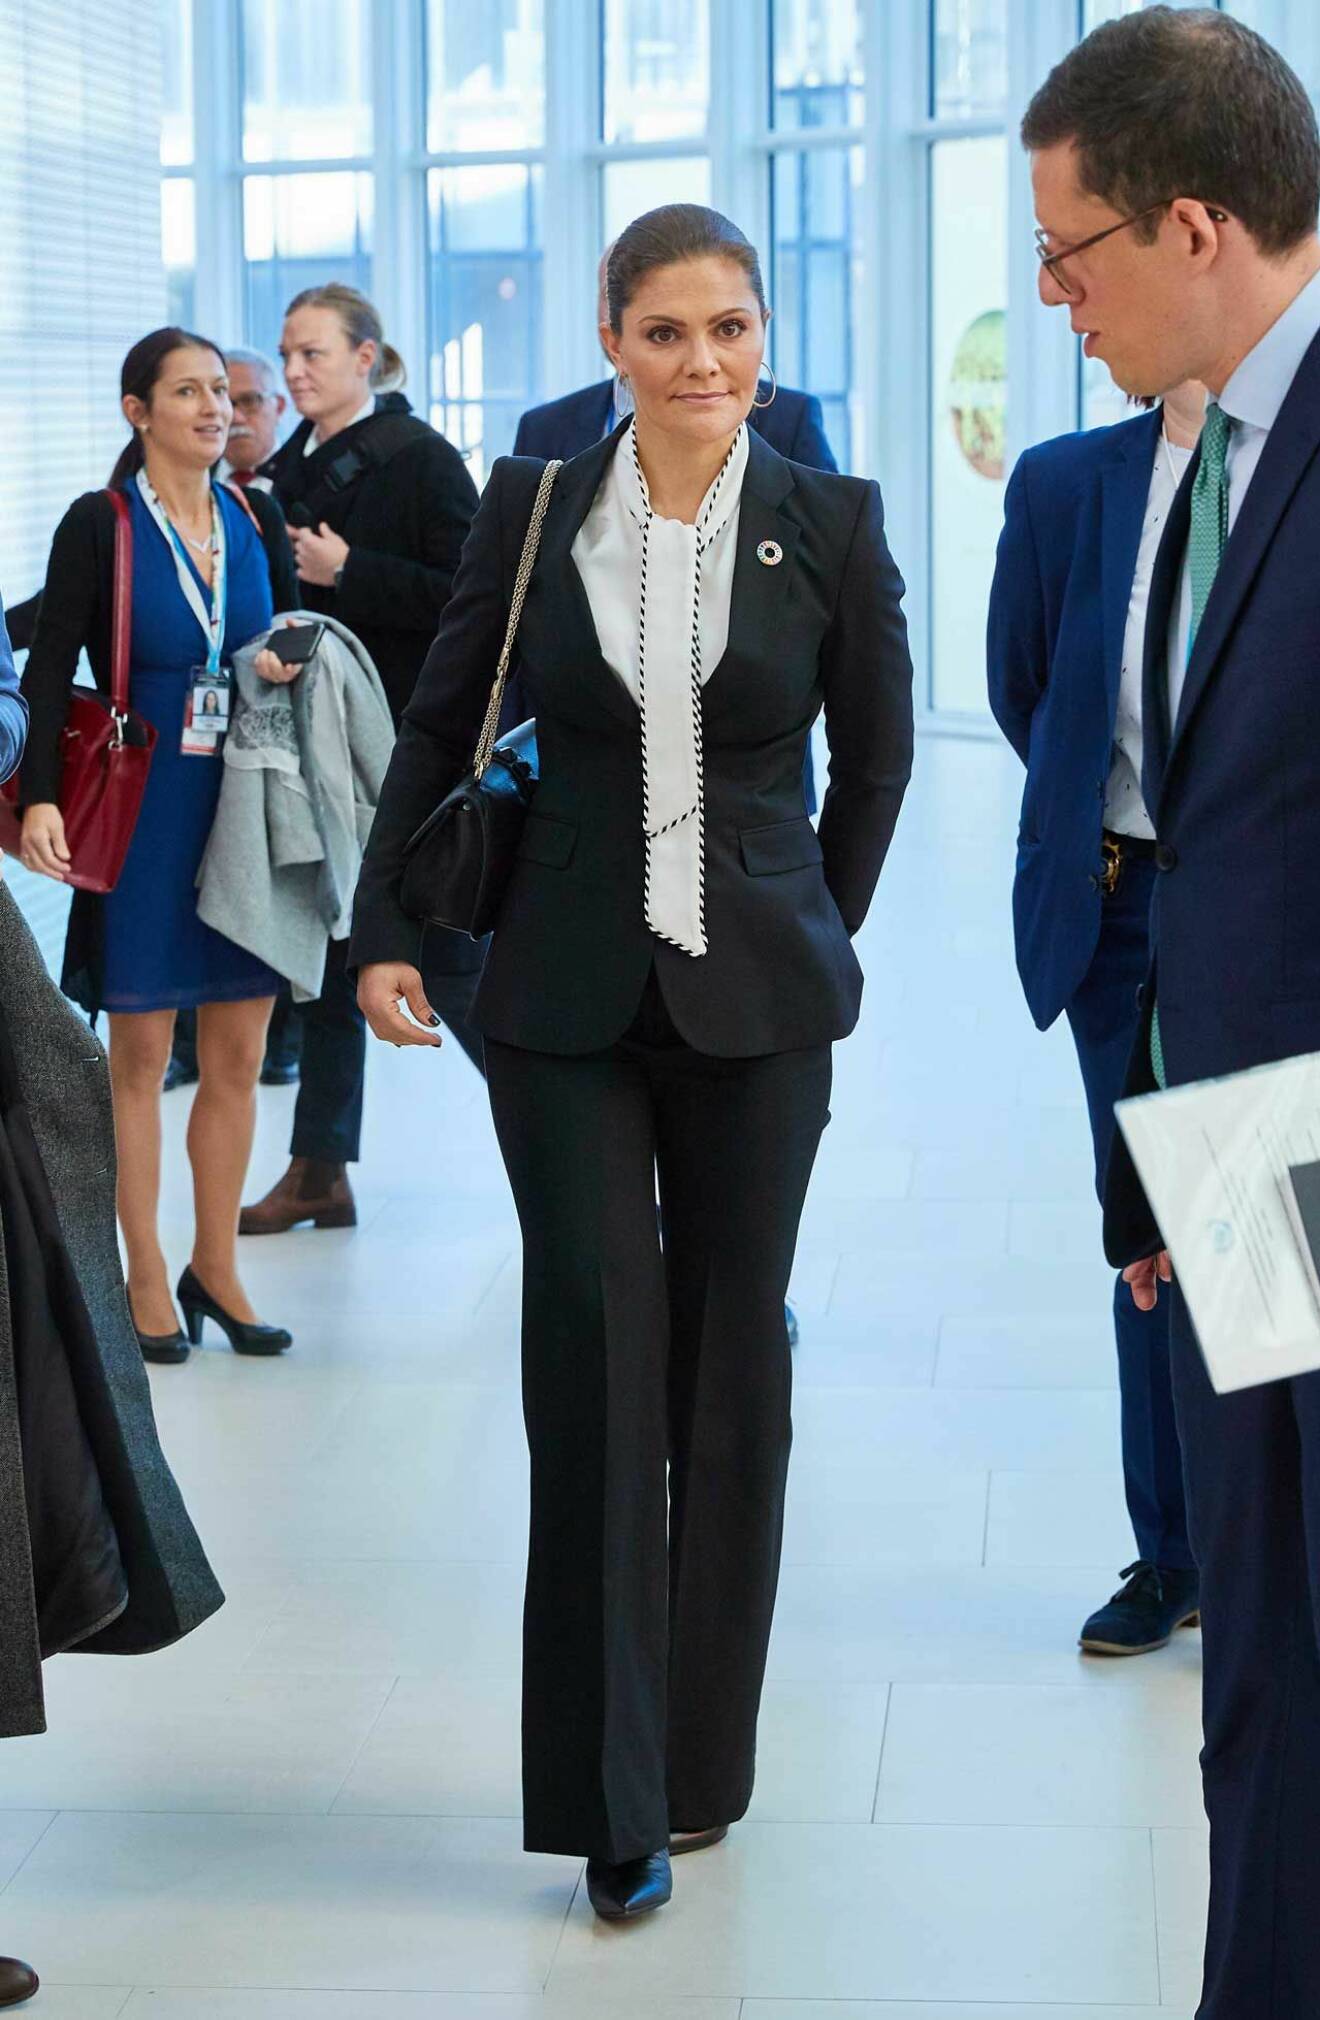 Kronprinsessan var talare under konferensen i Wien. 